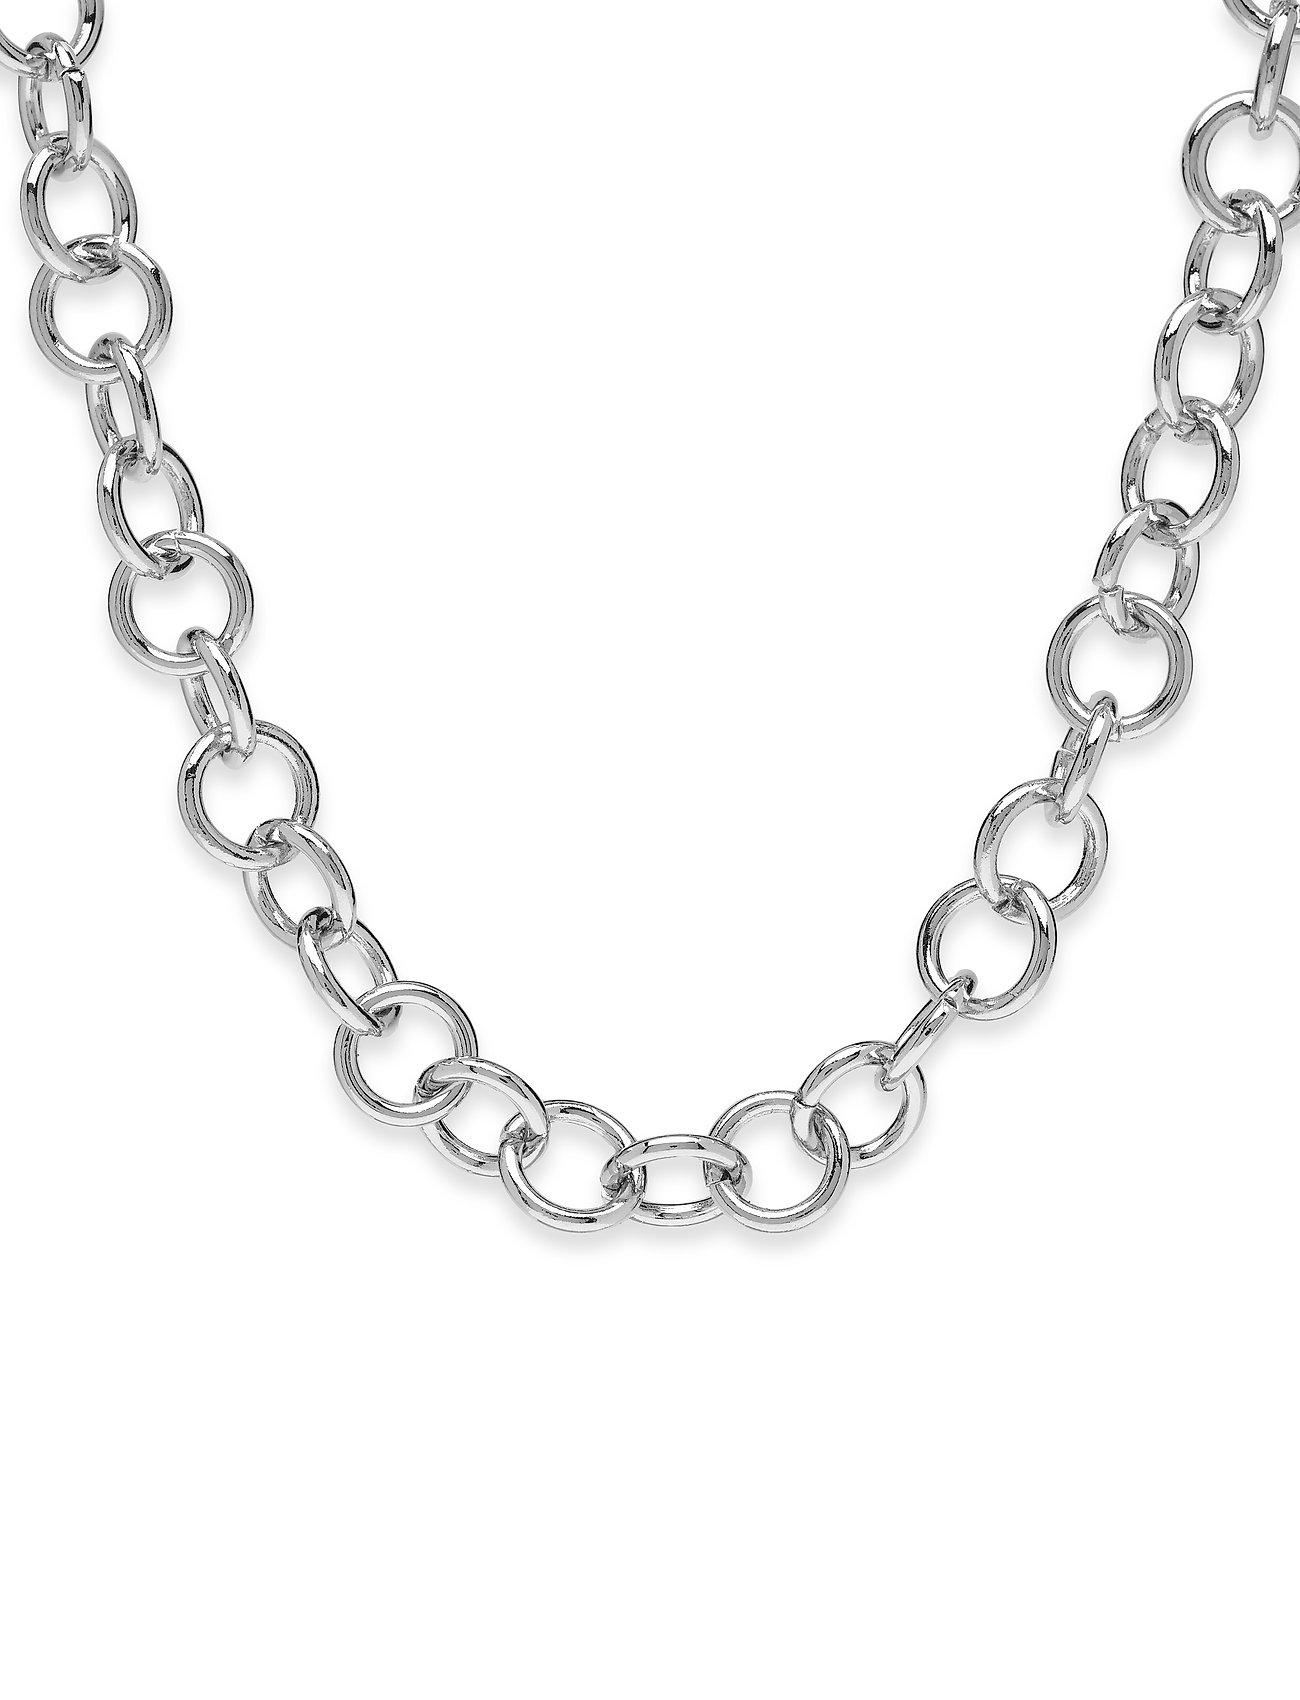 Pctasha Necklace Pb Accessories Jewellery Necklaces Chain Necklaces Hopea Pieces